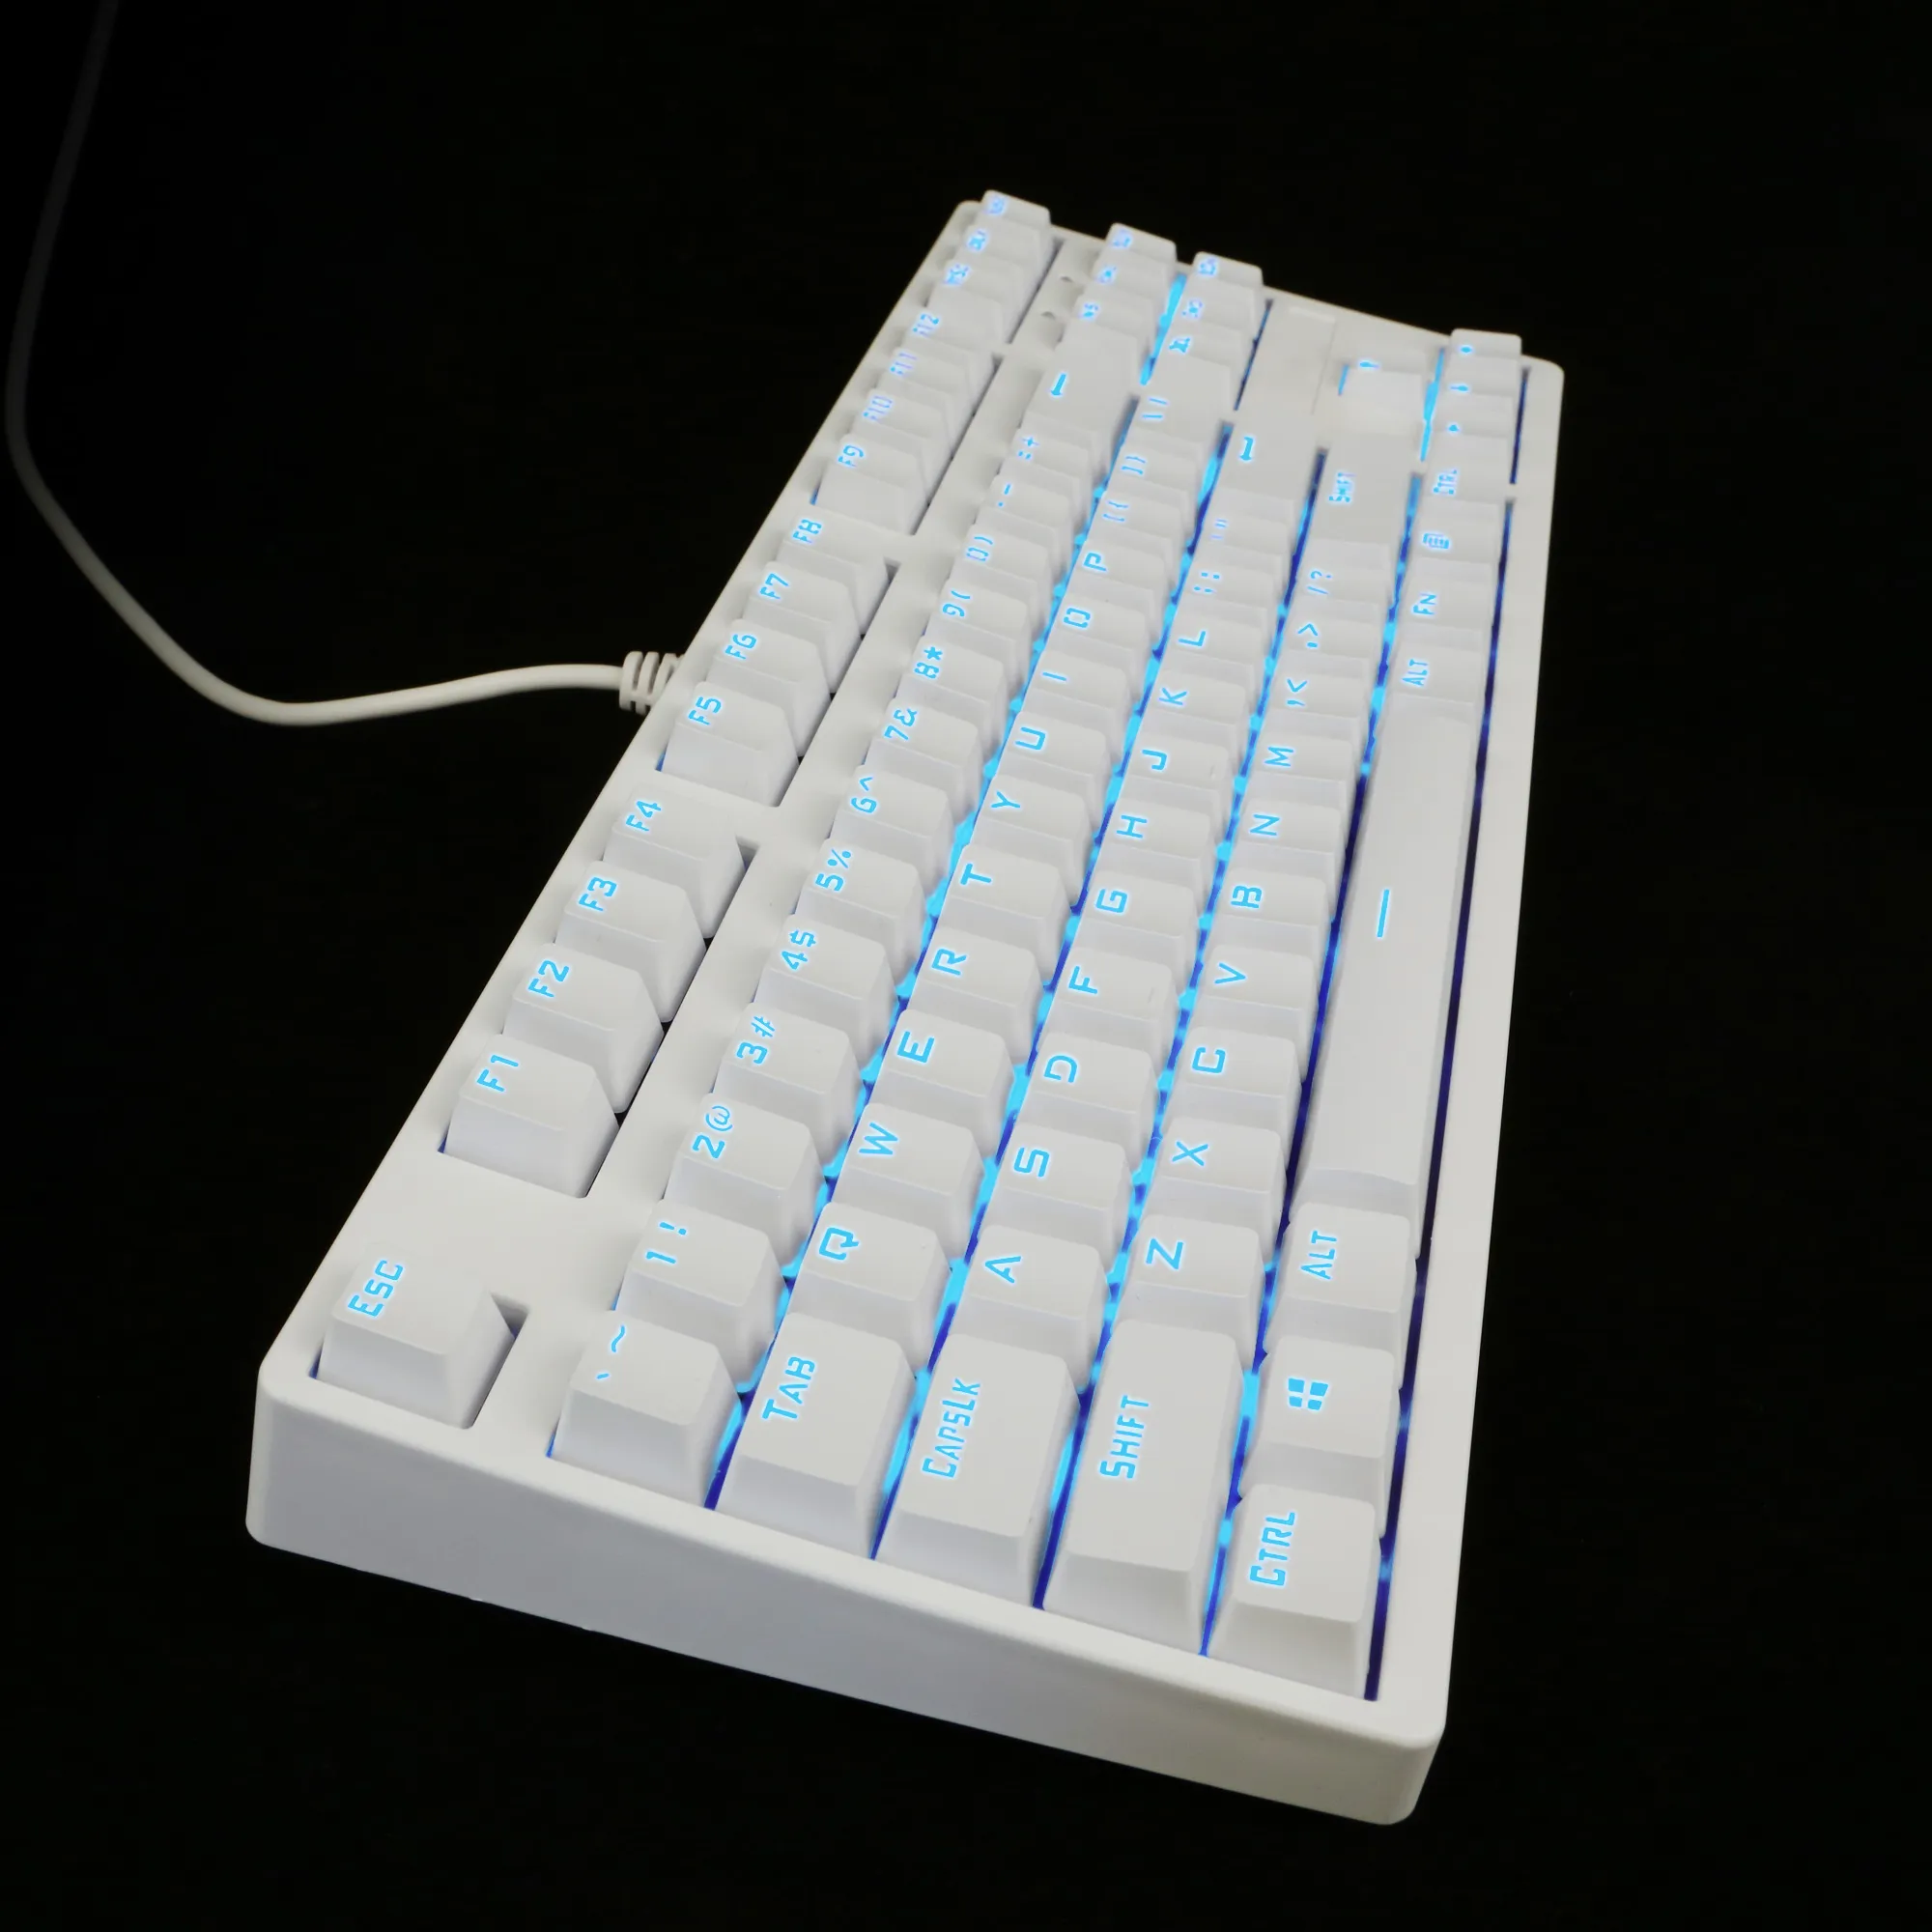 NKR Keyboard Mekanikal RGB Multi Warna, Kunci Konten Cherry MX Kailh